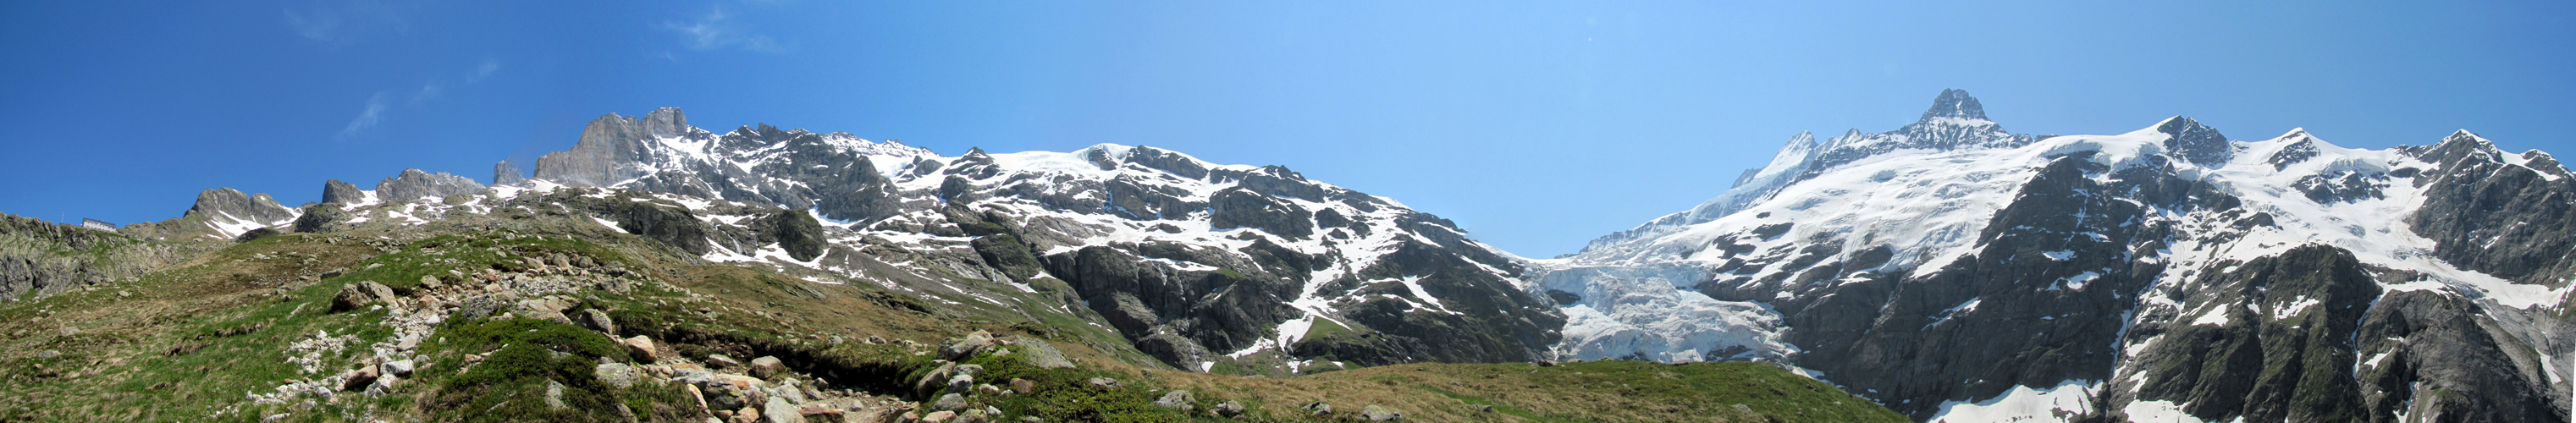 sehr schönes Breitbildfoto. Links Beesi Bergli, Oberer Grindelwaldgletscher, Schreckhorn, Nässihorn und Klein Schreckhorn